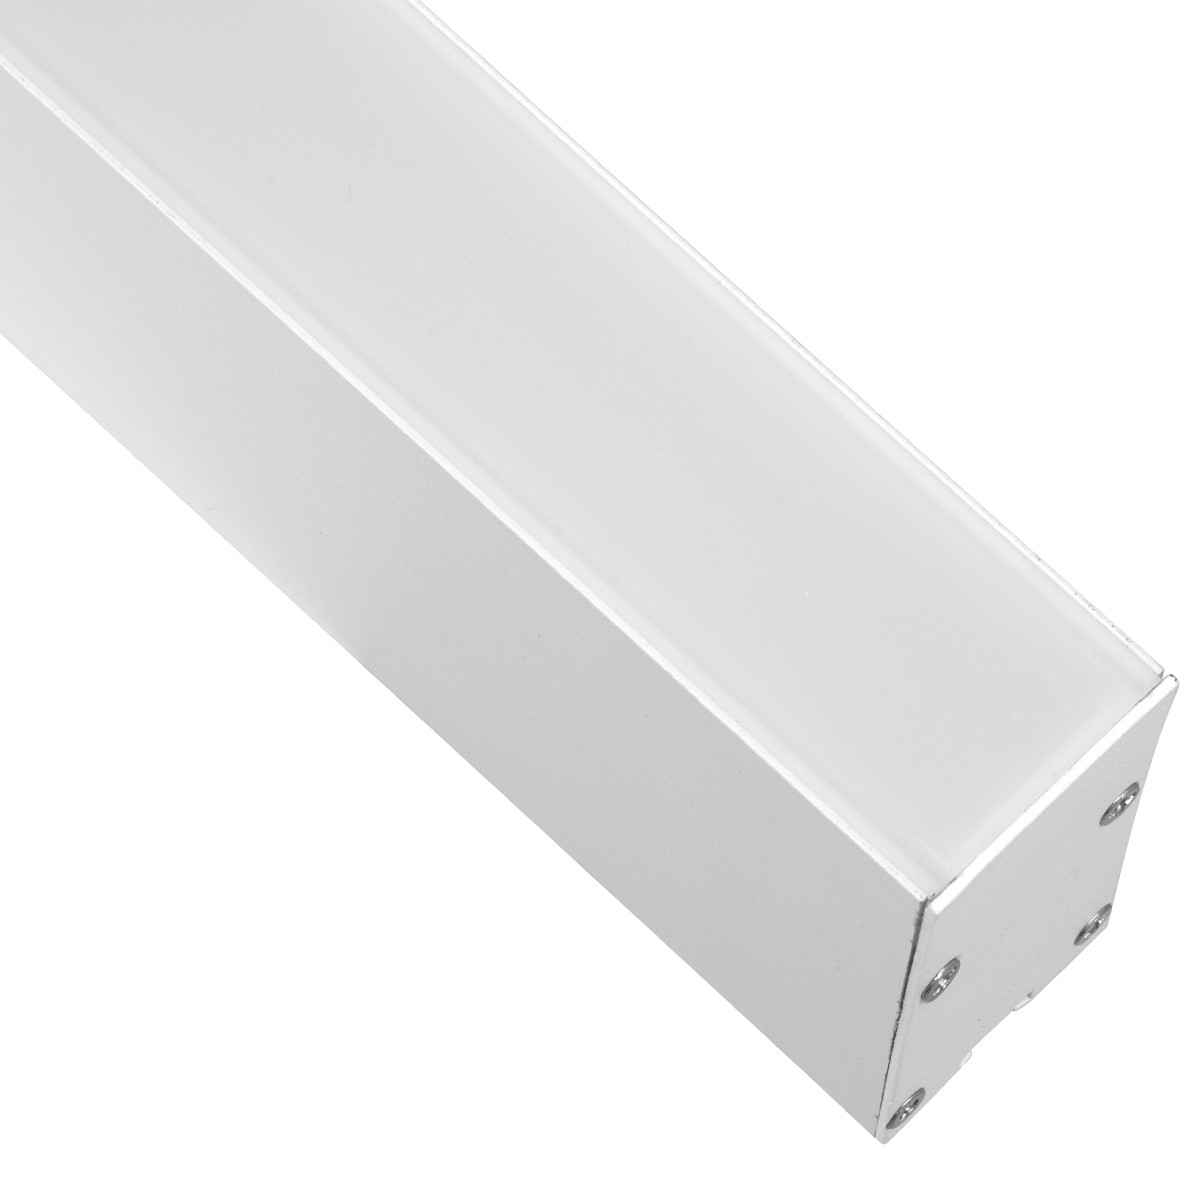 Led Γραμμικό Φωτιστικό Τοίχου - Απλίκα FELIX 54Watt Λευκό με Εναλλαγή Φωτισμού Μ120 x Π3.5 x Υ7cm 61029-W